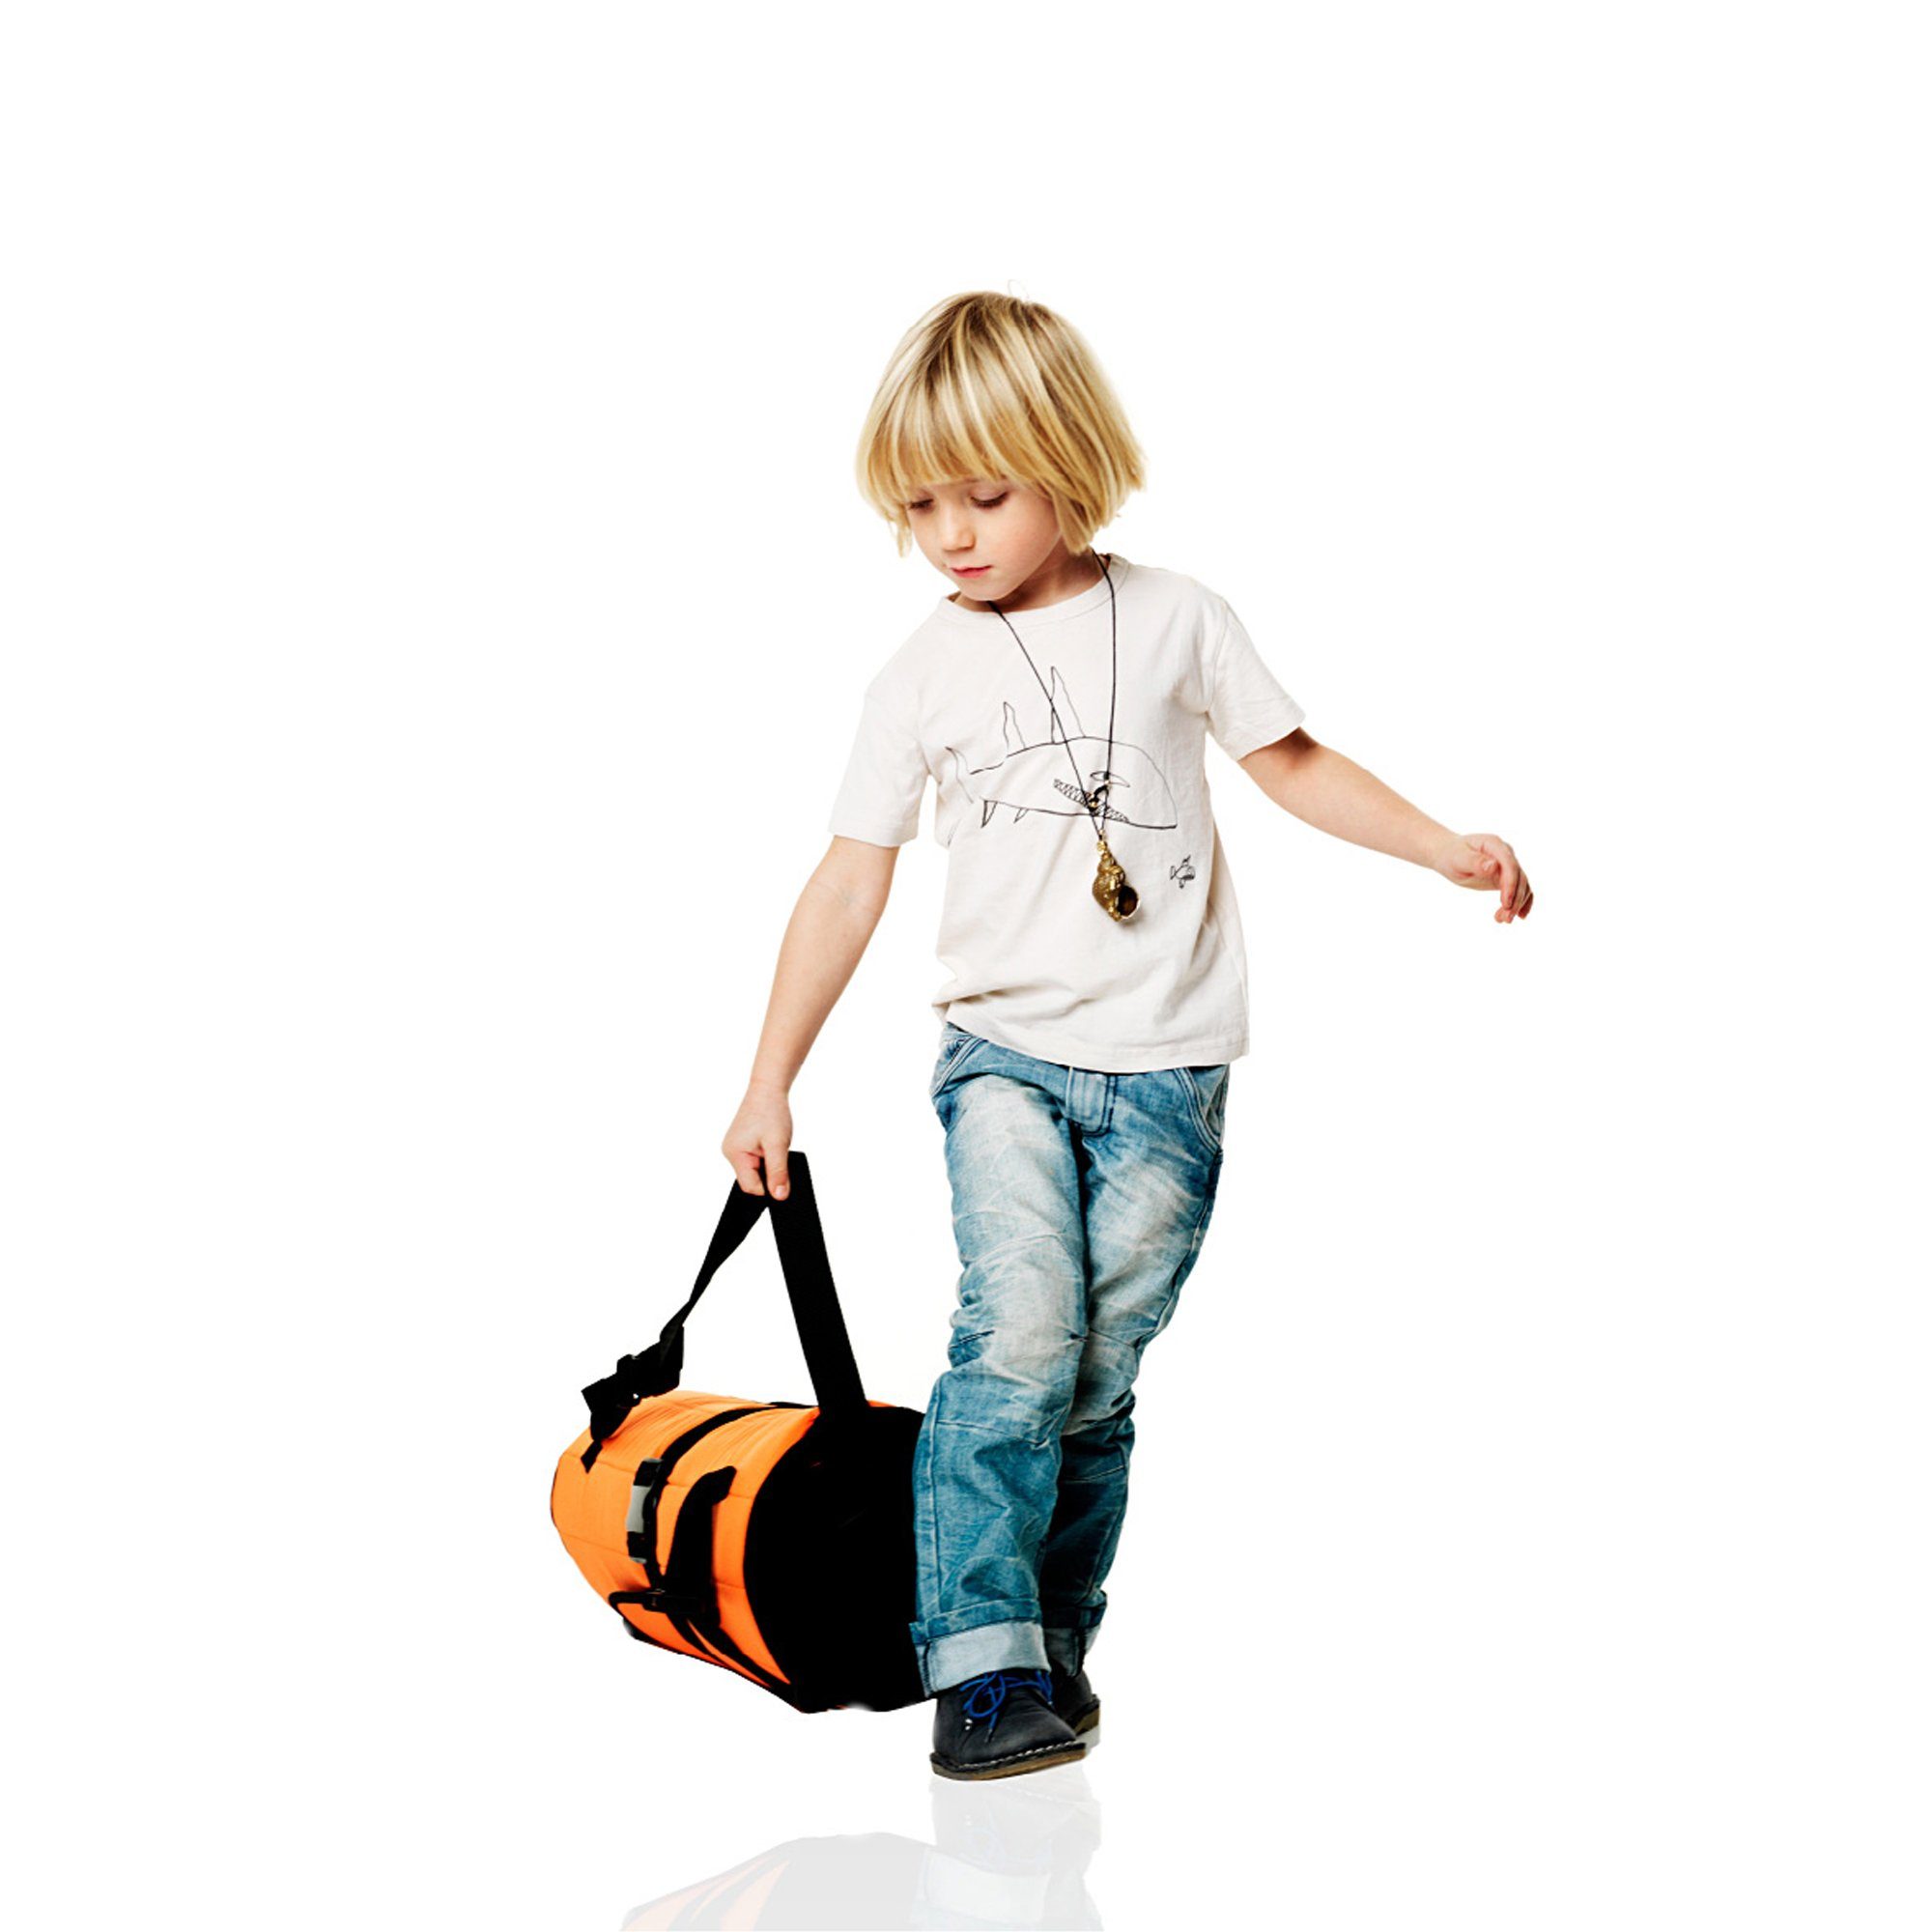 Stokke Kinderwagen-Transporttasche PramPack™ - die Reisetasche gängigen alle Kinderwagen. für